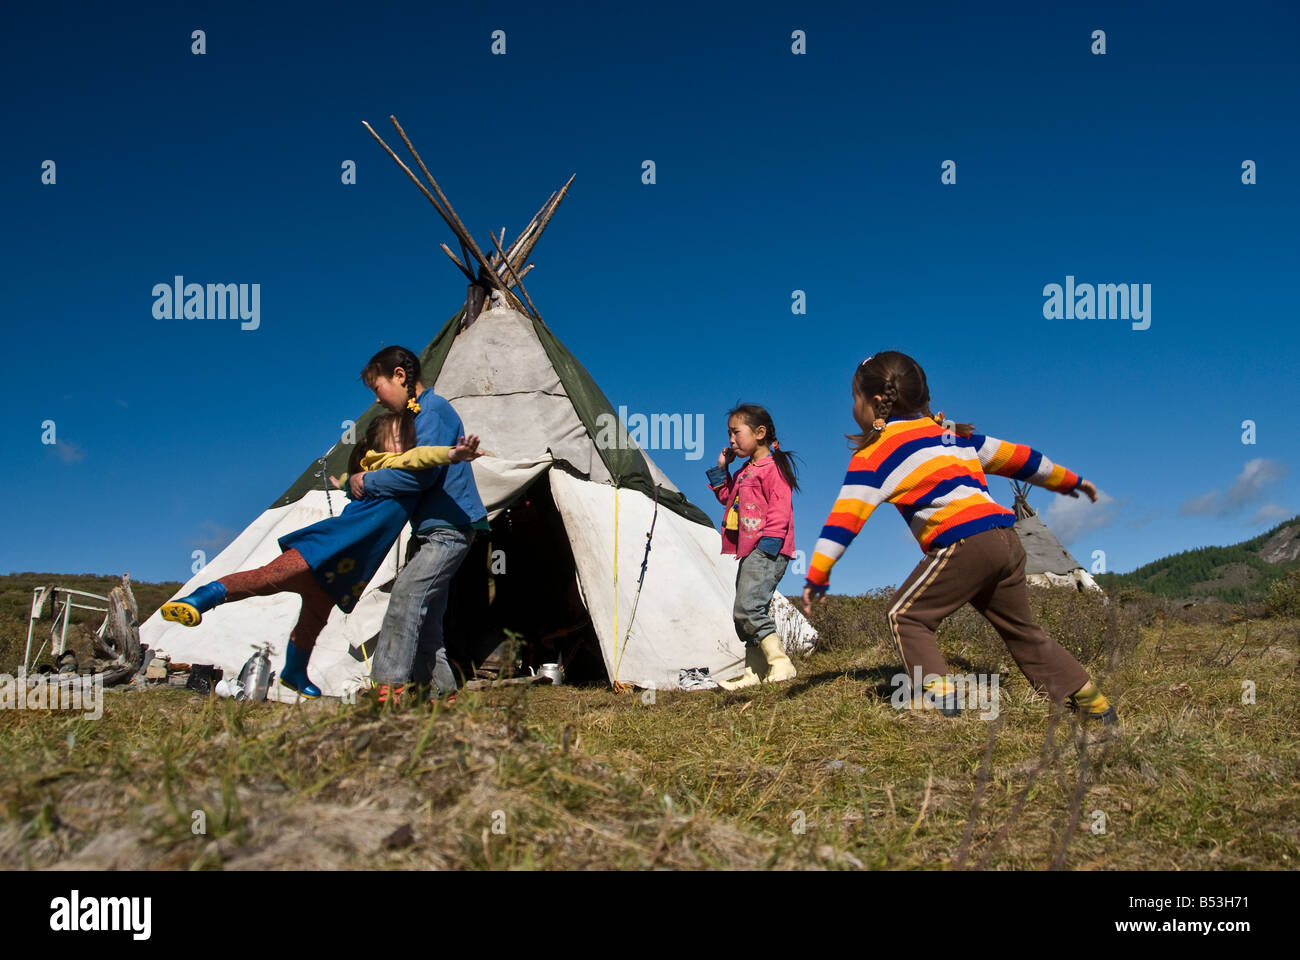 Tsataan children playing Northern Mongolia, Tsagaanuur 2008. Stock Photo